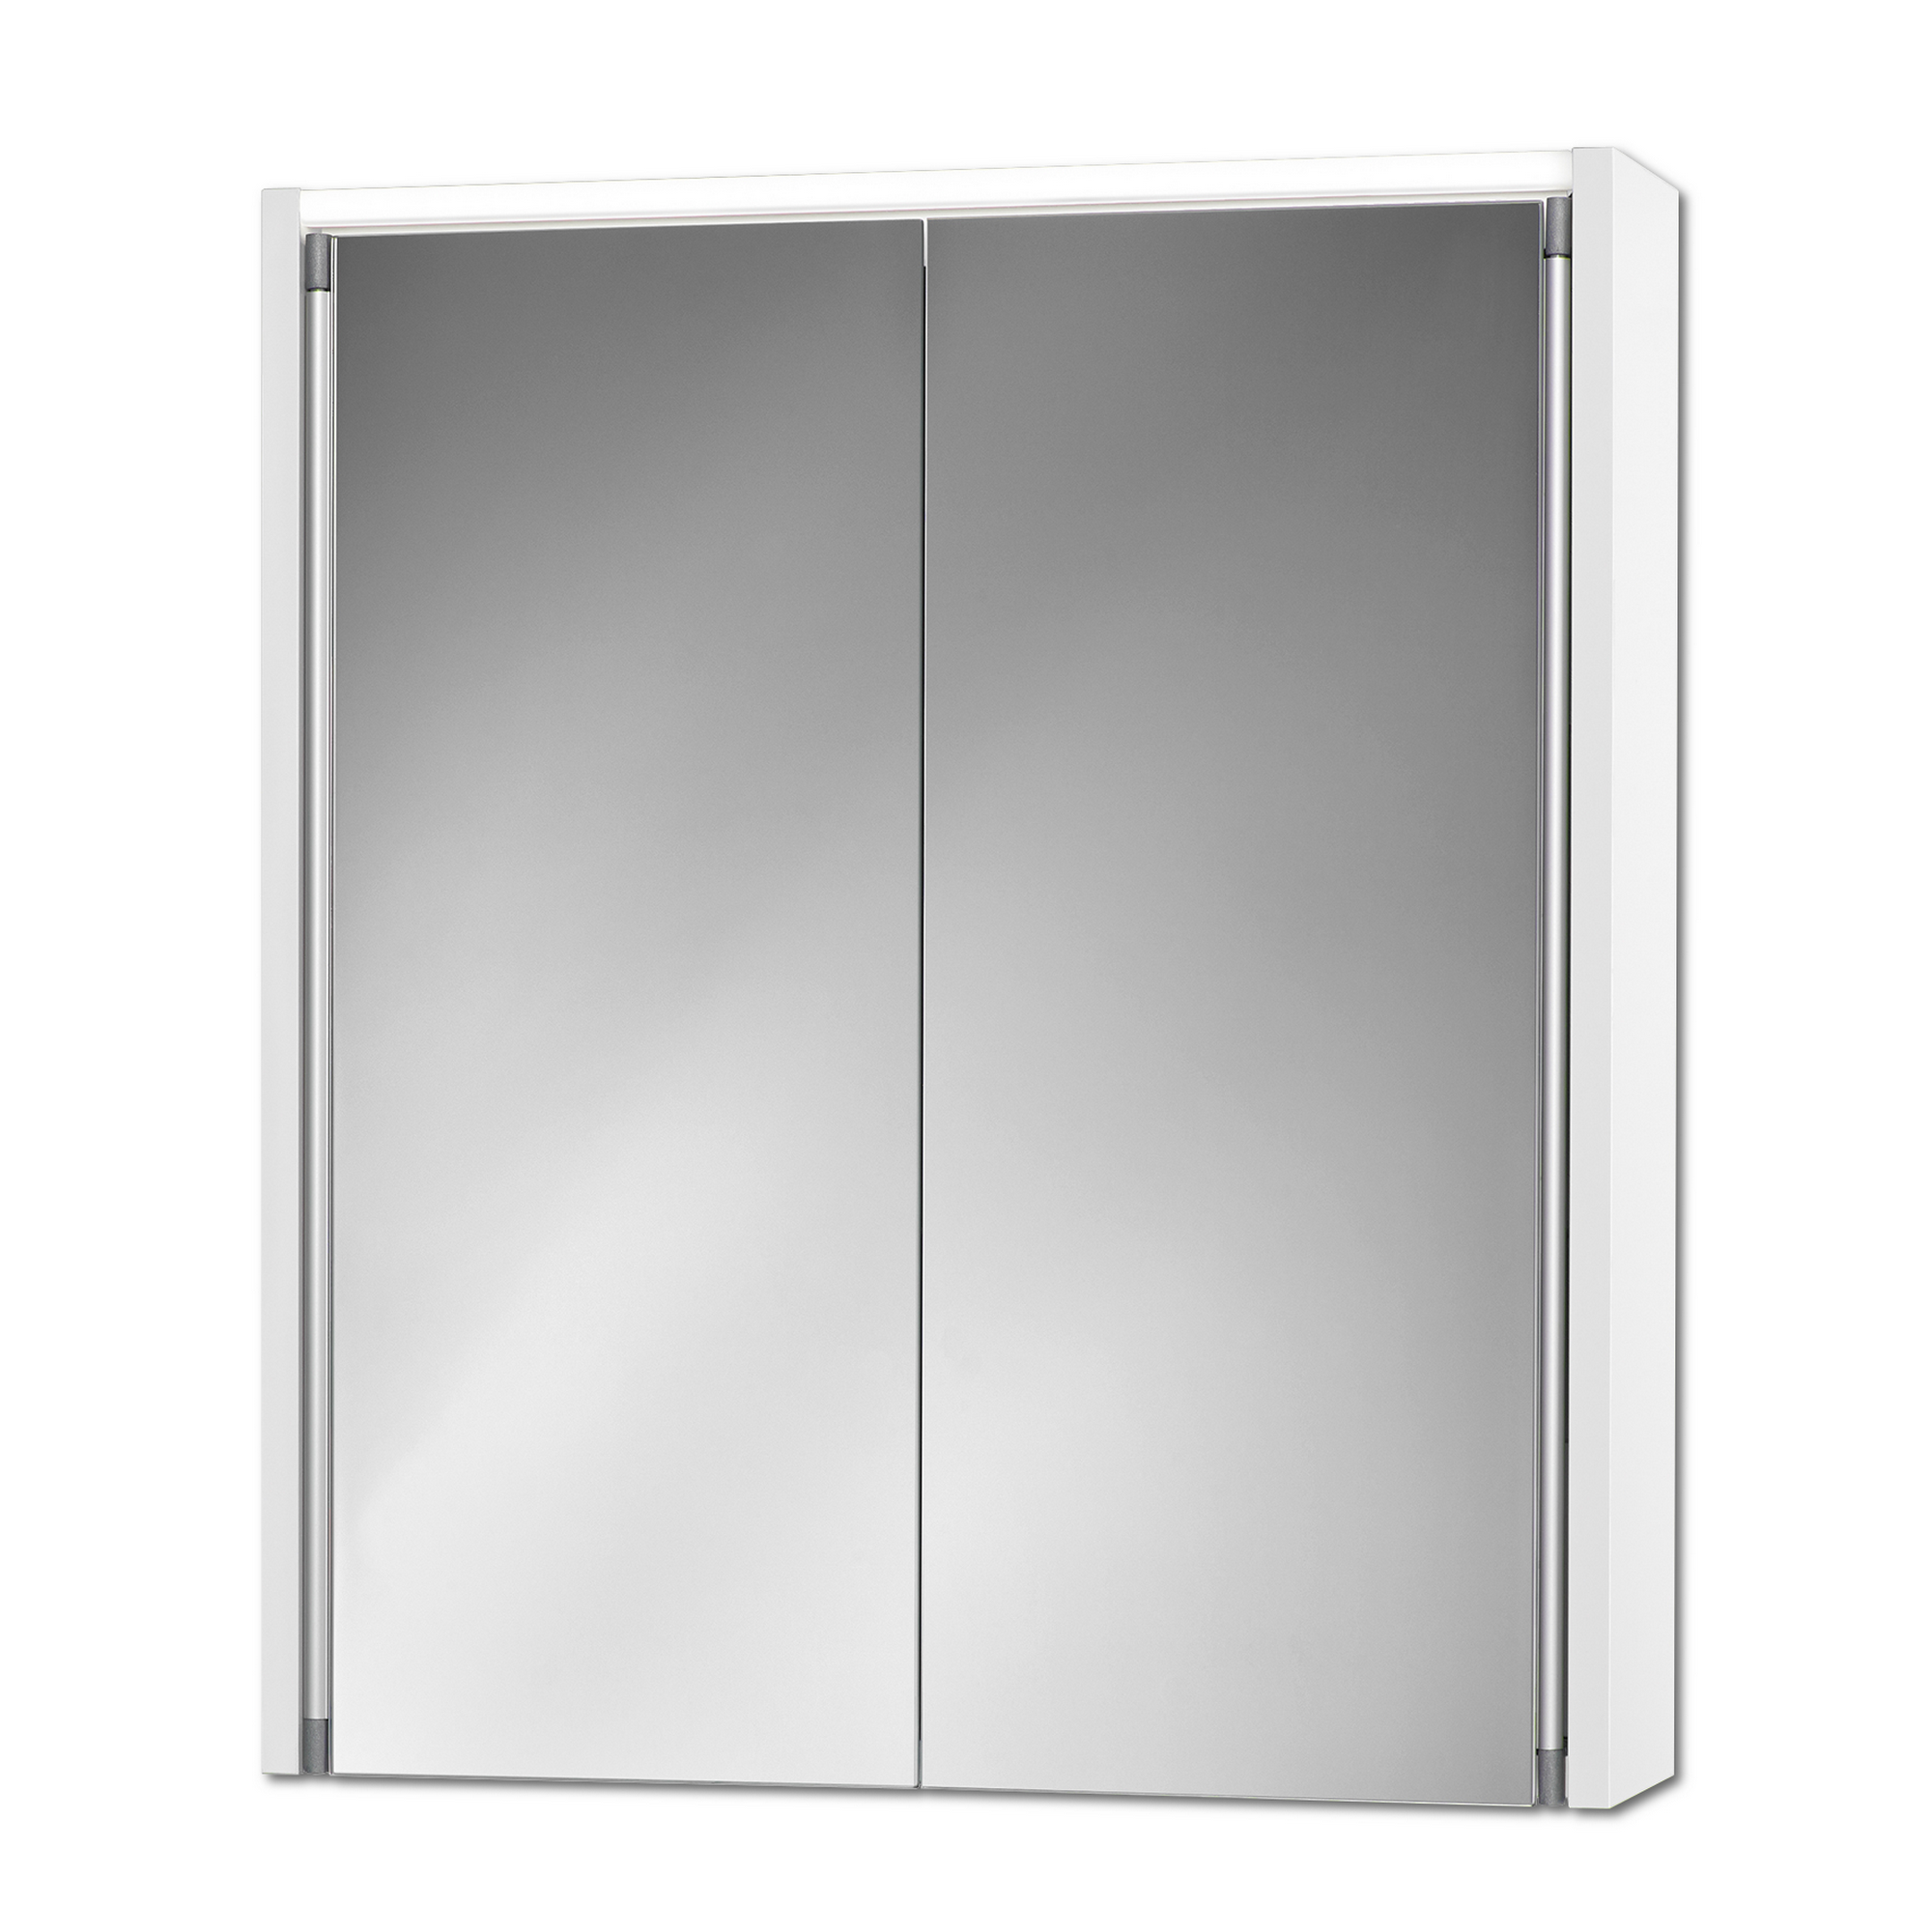 LED-Spiegelschrank 'Nelma' weiß 54 x 15 x 63 cm